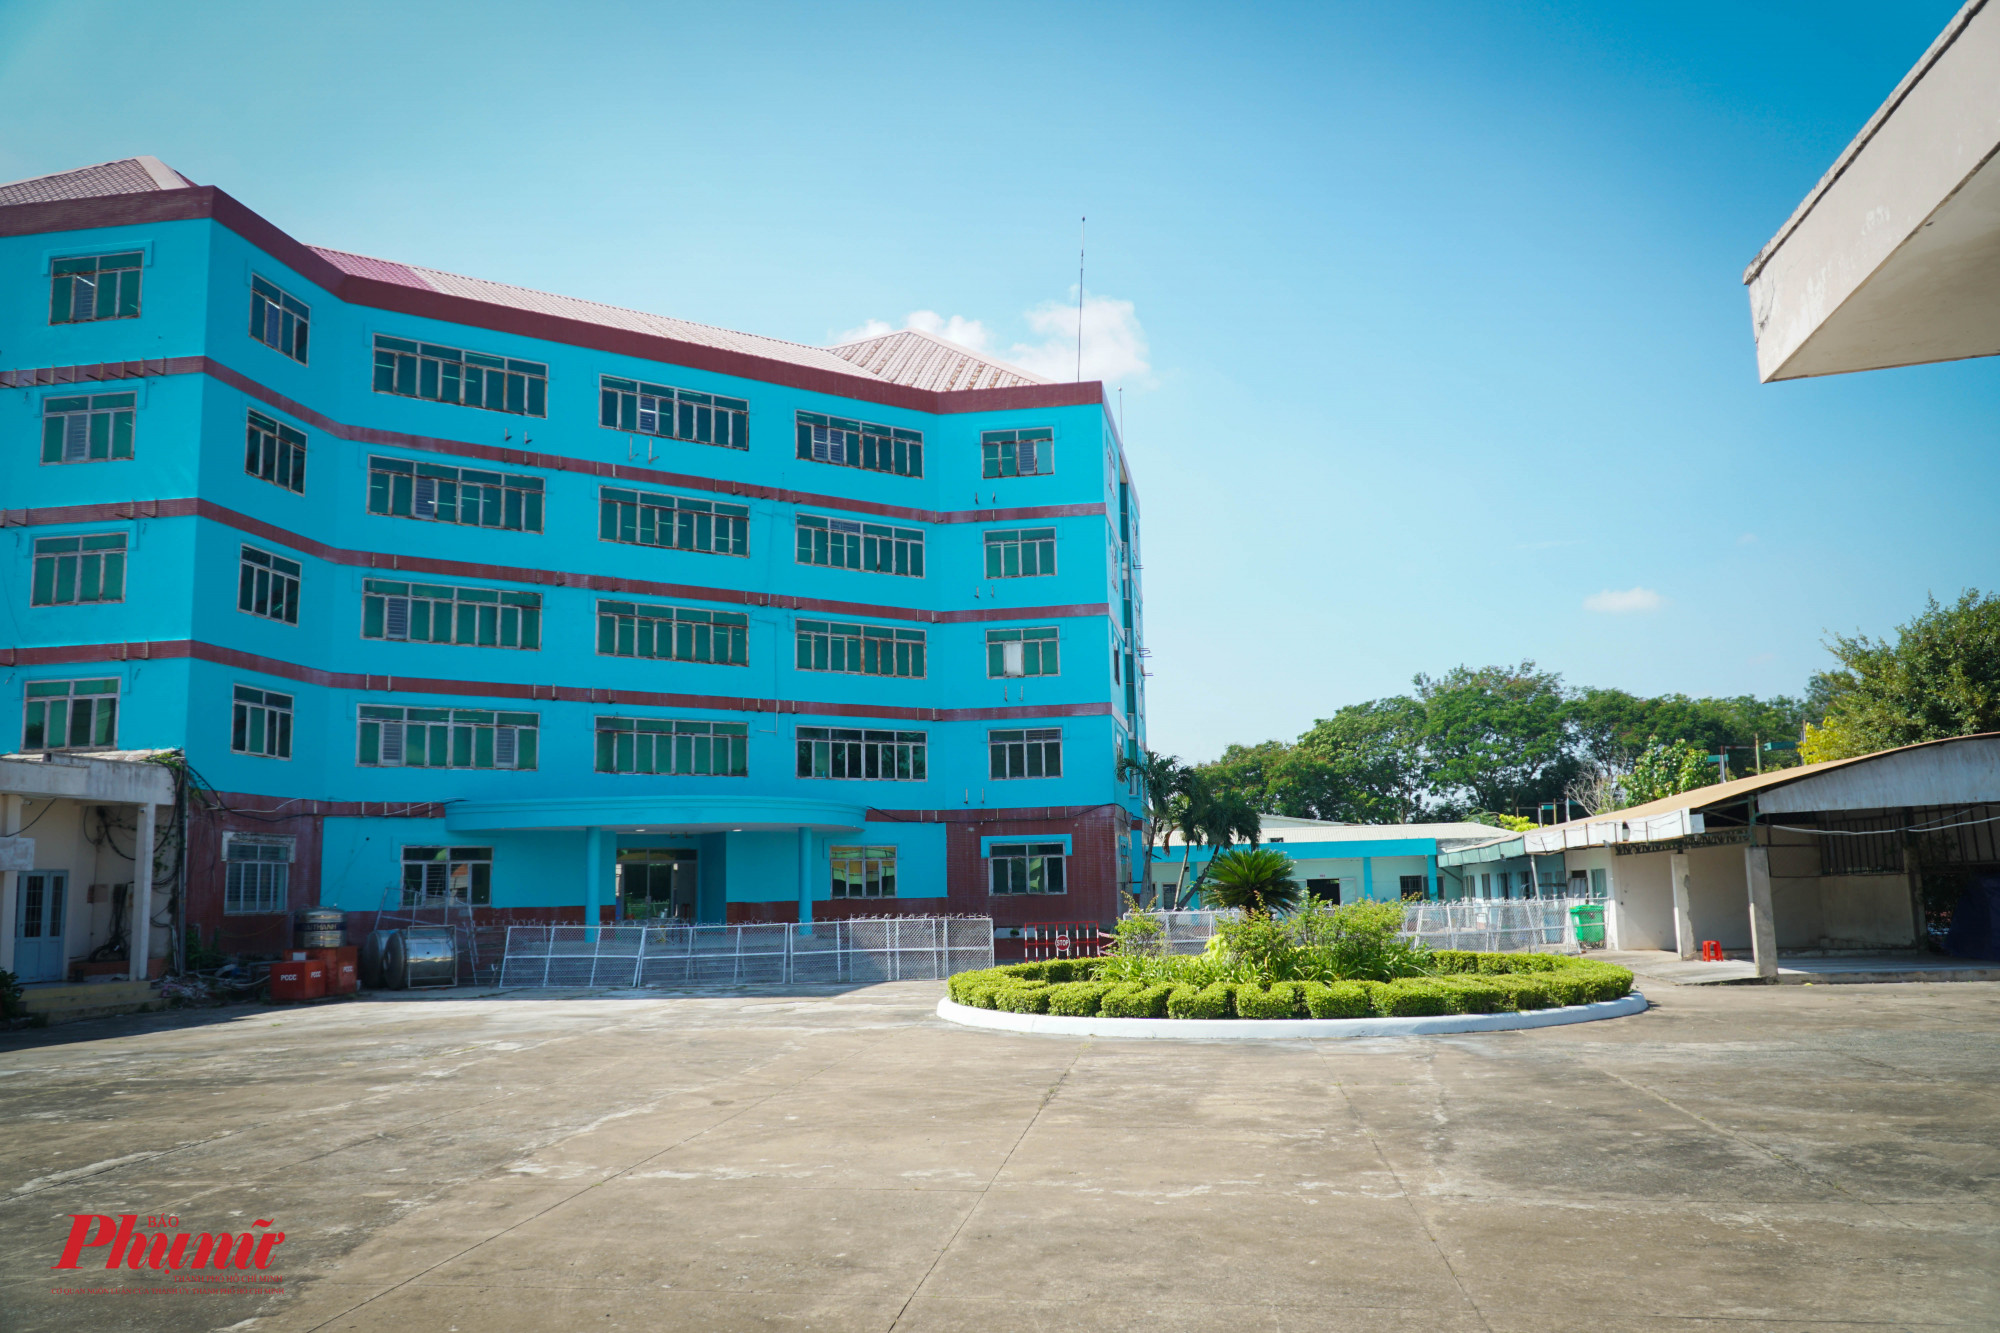 Bệnh viện dã chiến điều trị COVID-19 Bình Chánh số 01 được khánh thành tại Trung tâm Văn hóa Thể duc – Thể thao, số 113 Nguyễn Hữu Trí (Thị trấn Tân Túc, huyện Bình Chánh, TPHCM)